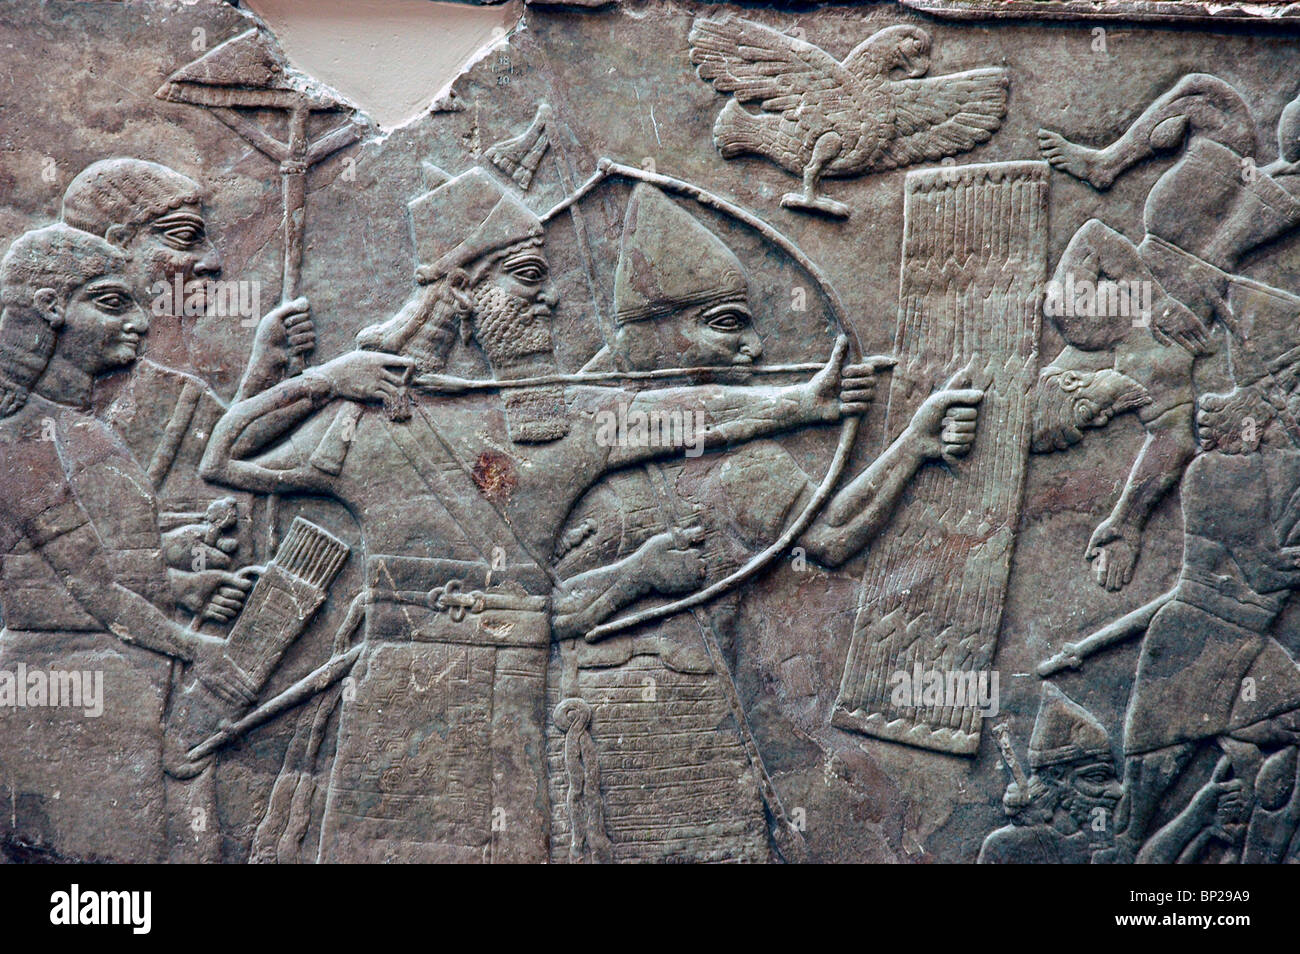 Esercito assiro arcieri, mentre uno spara la freccia, l'altra è la protezione di lui con un rilievo di protezione da Nimrud, C. 865 A.C. Foto Stock